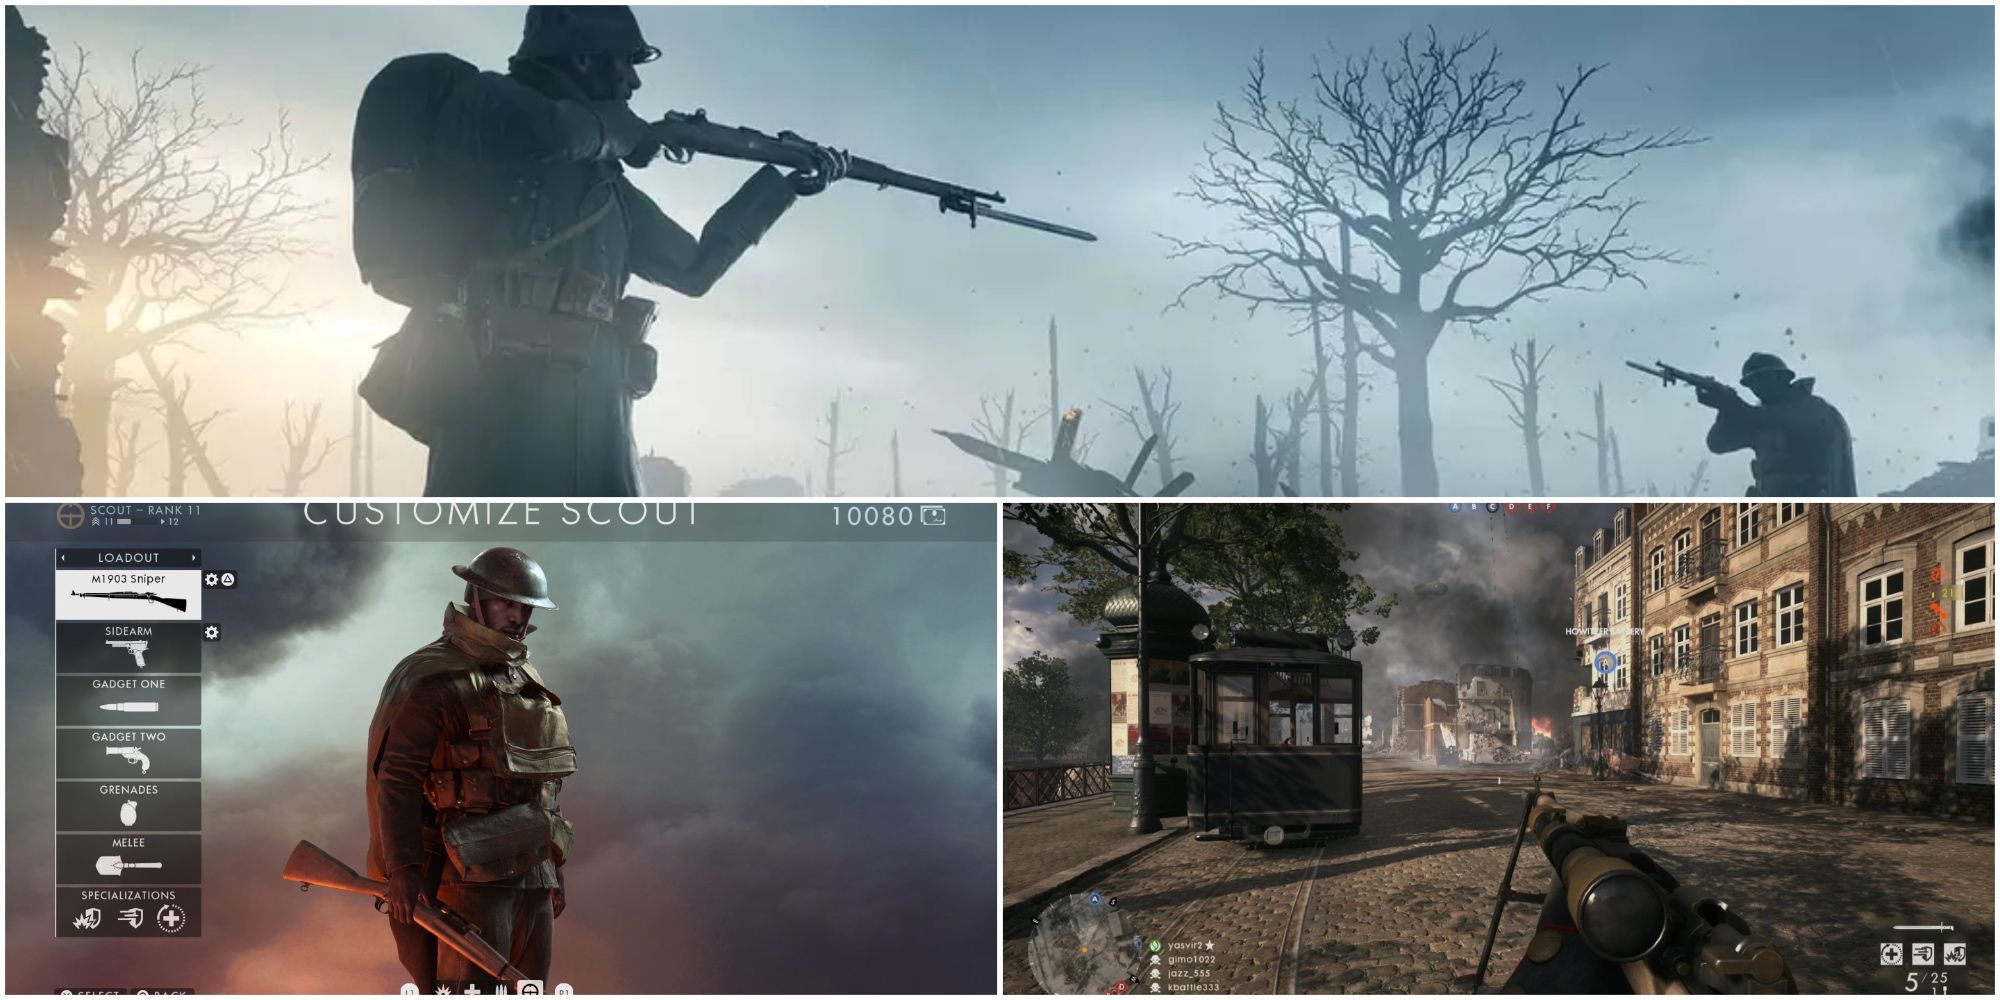 Split image showing scout weapons in Battlefield 1.